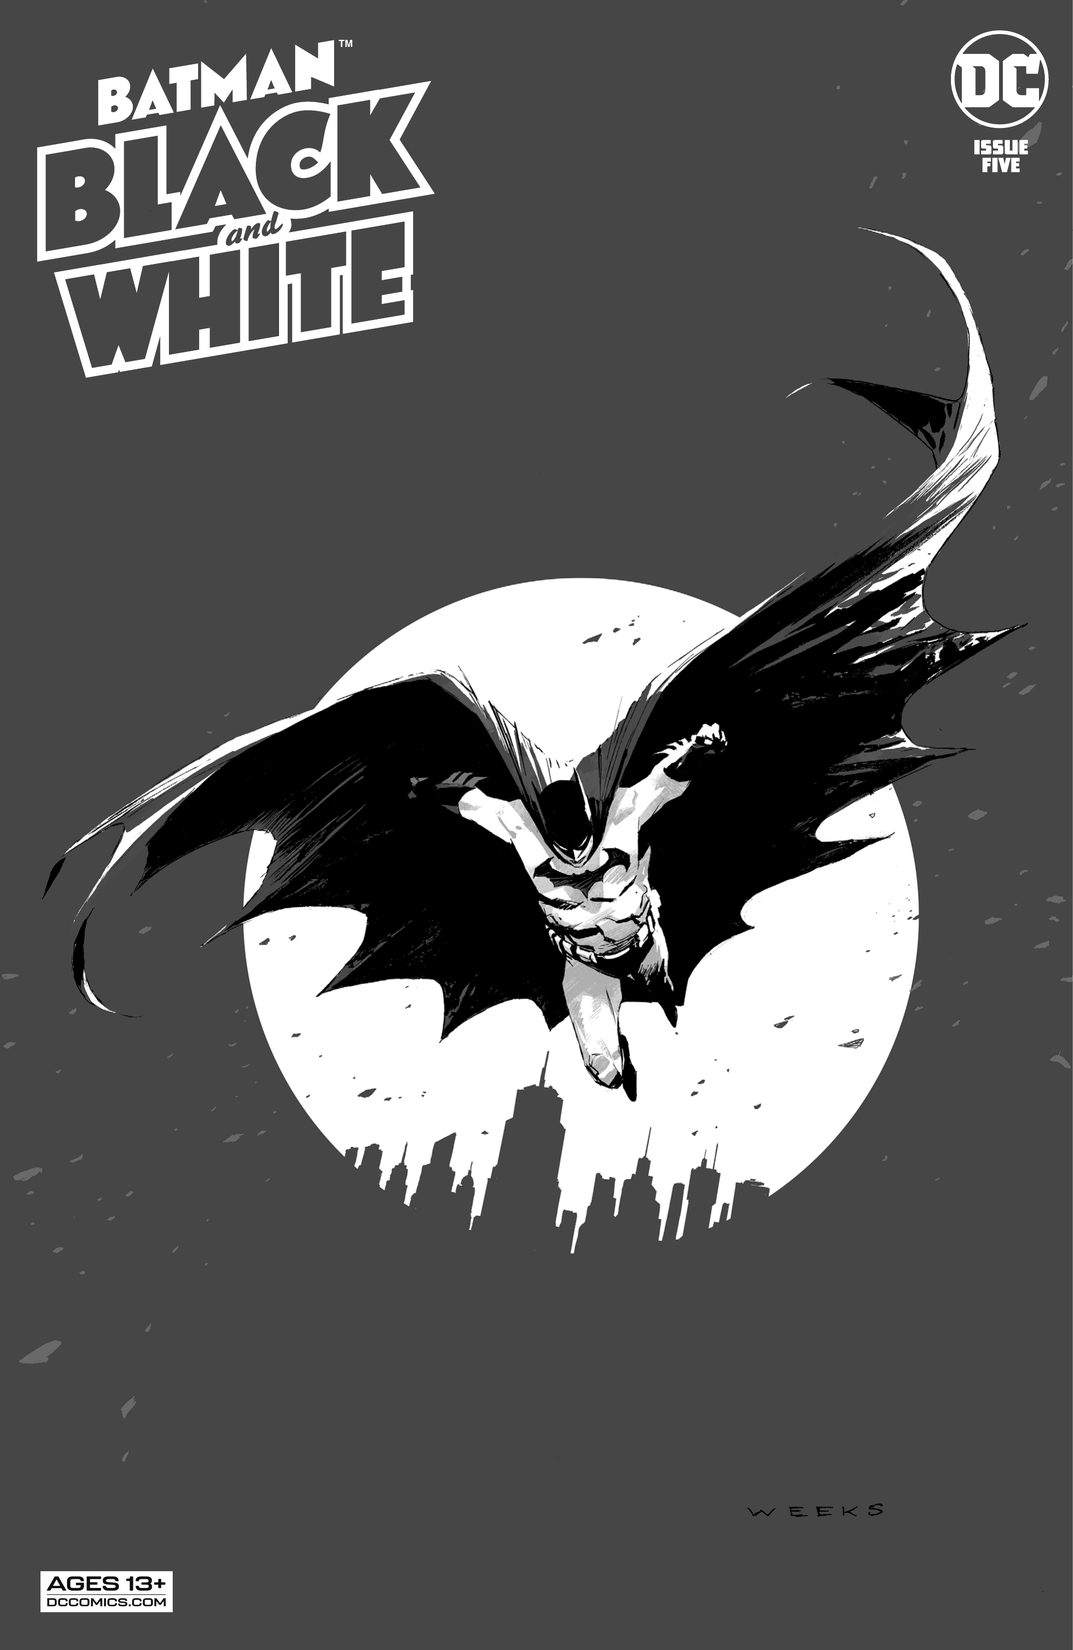 Batman Black & White (2020-) #5 preview images